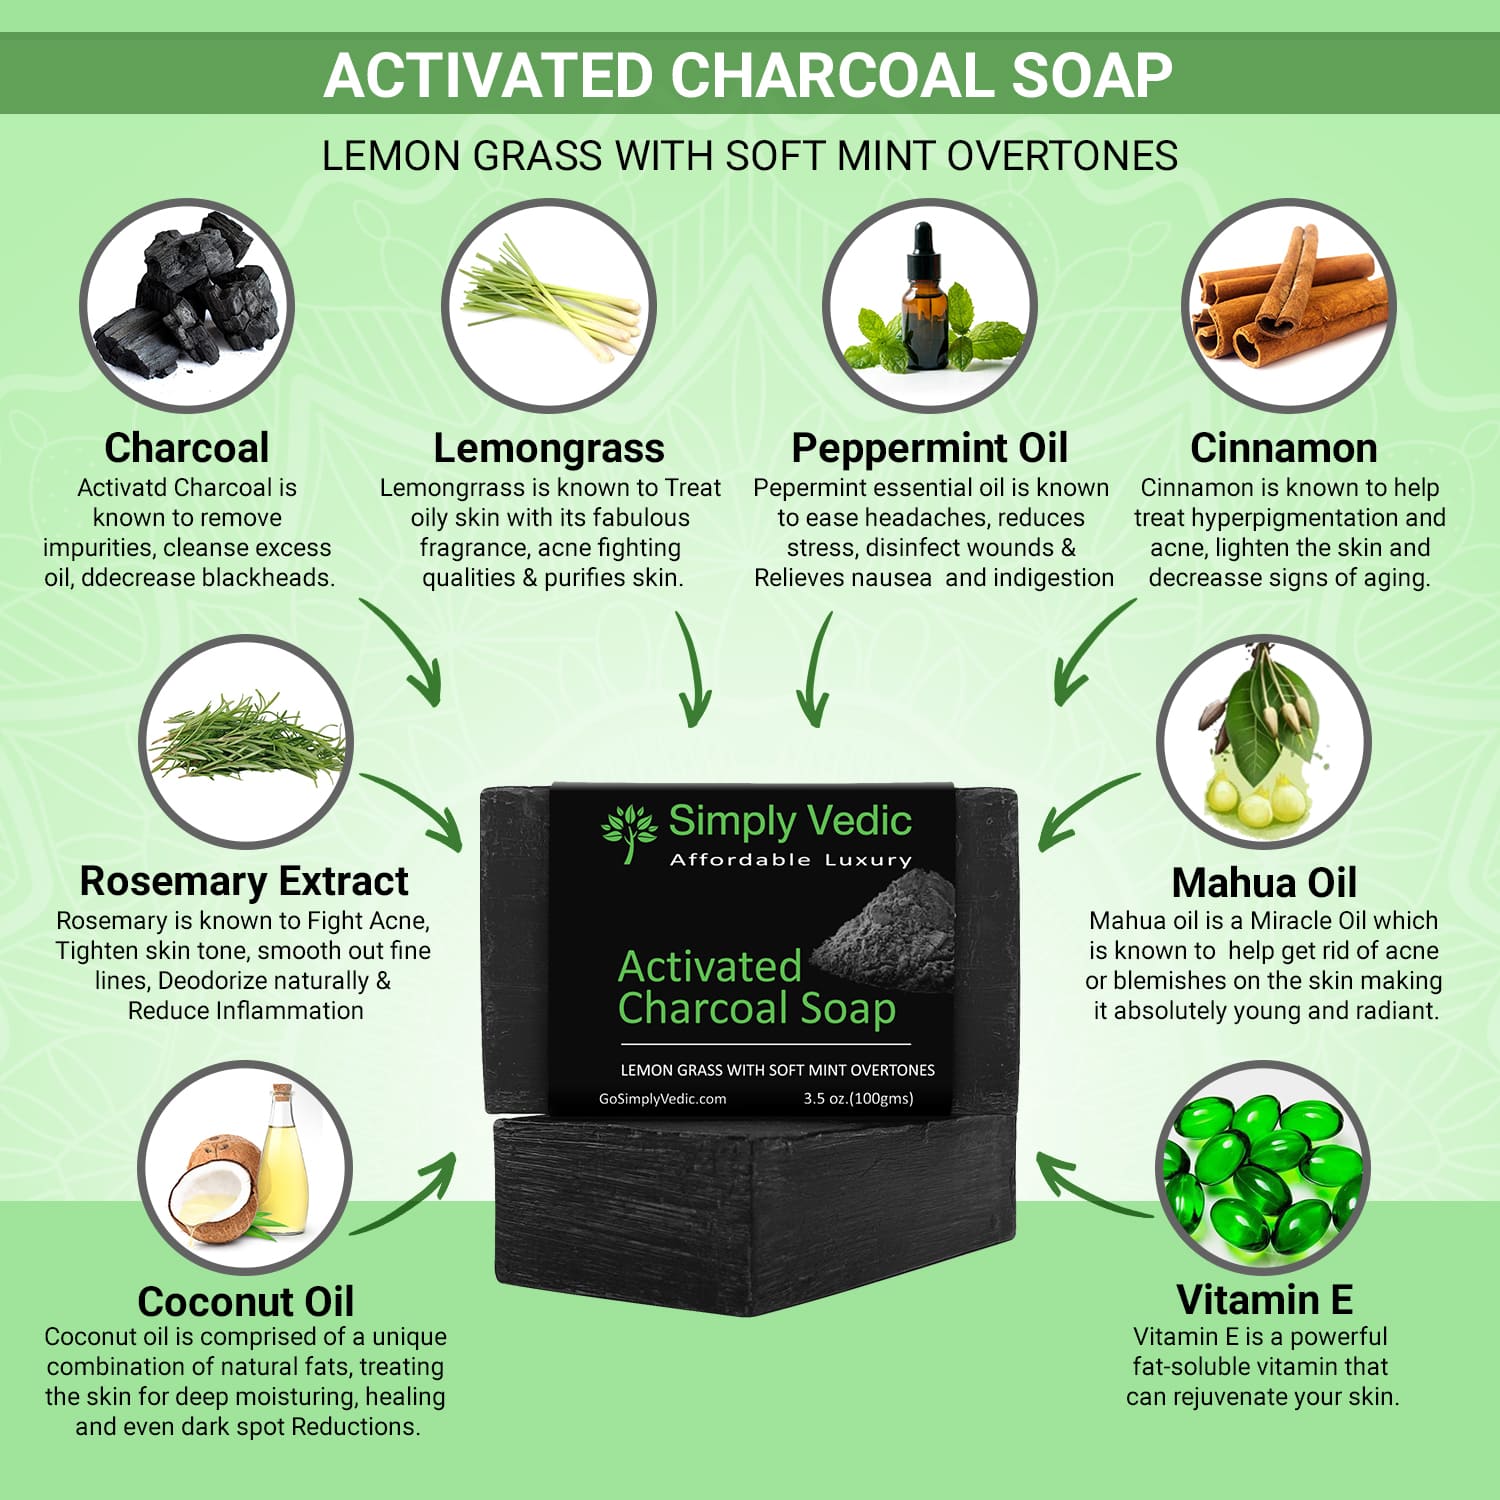 Charcoal Mint Soap